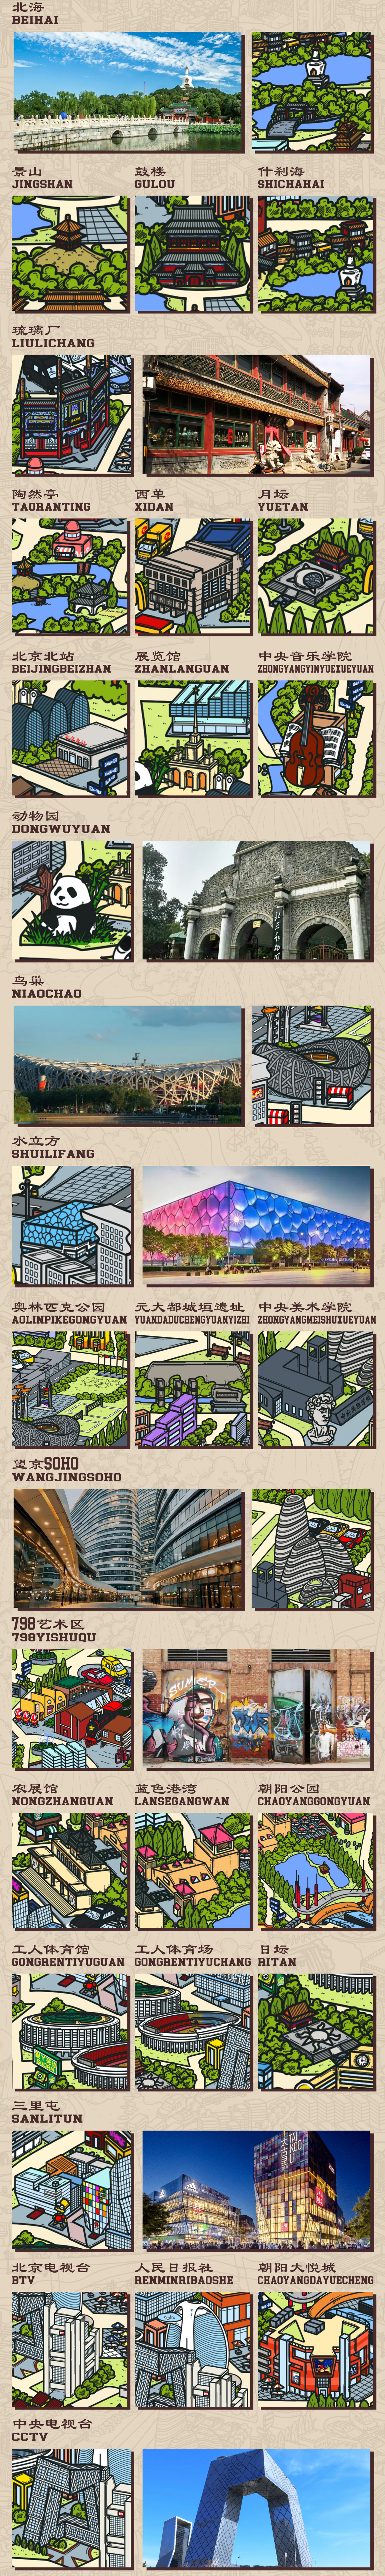 北京城的景区旅游文创手绘地图